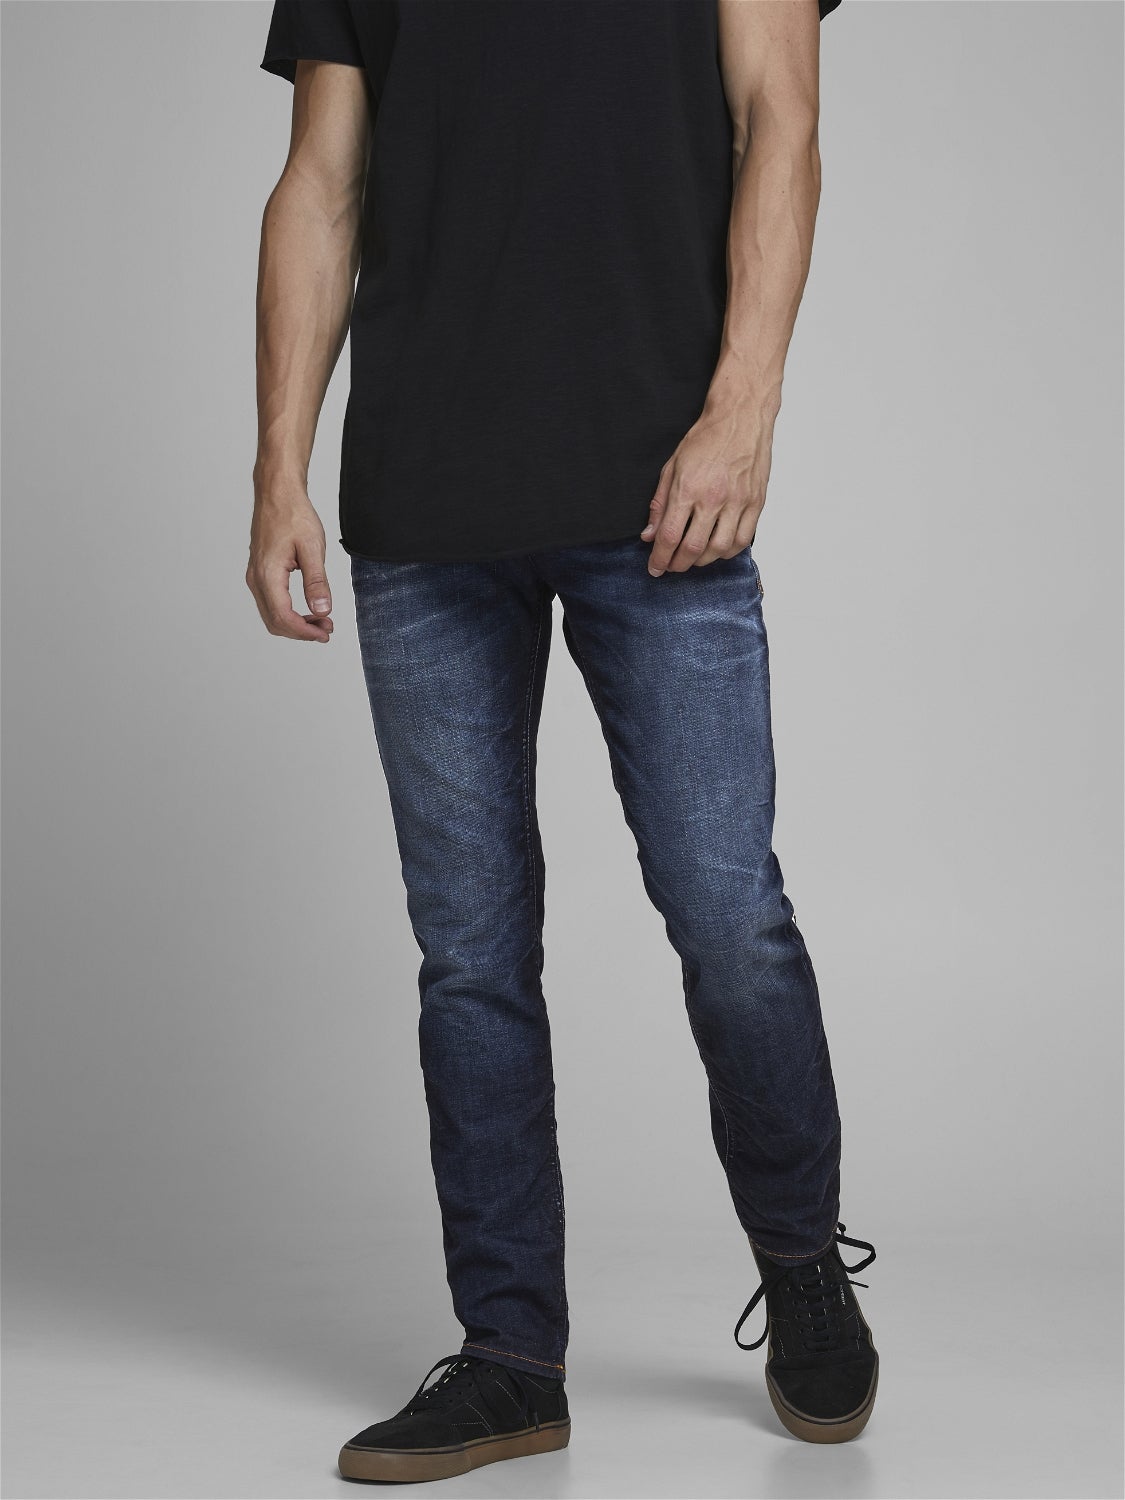 MEN FASHION Jeans Strech Jack & Jones capri jeans Navy Blue XL discount 57% 